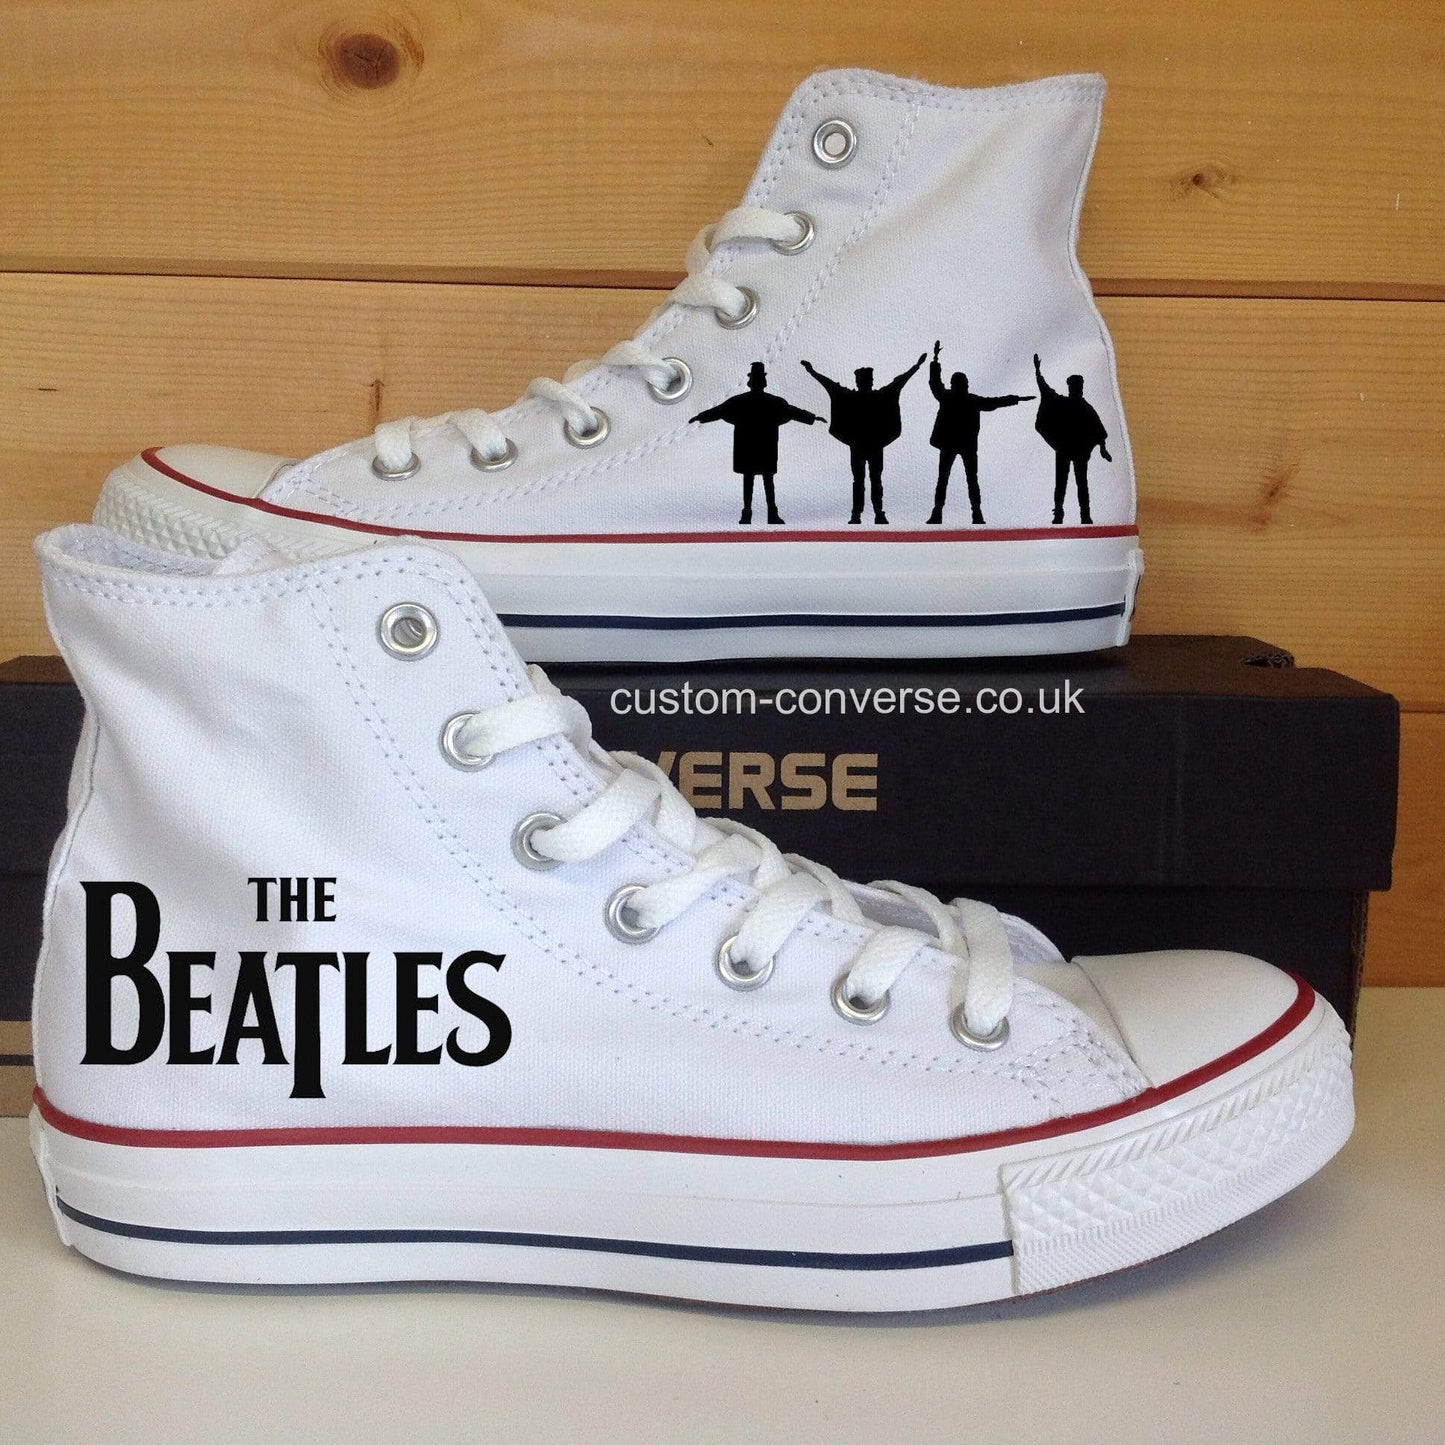 The Beatles - Custom Converse Ltd.